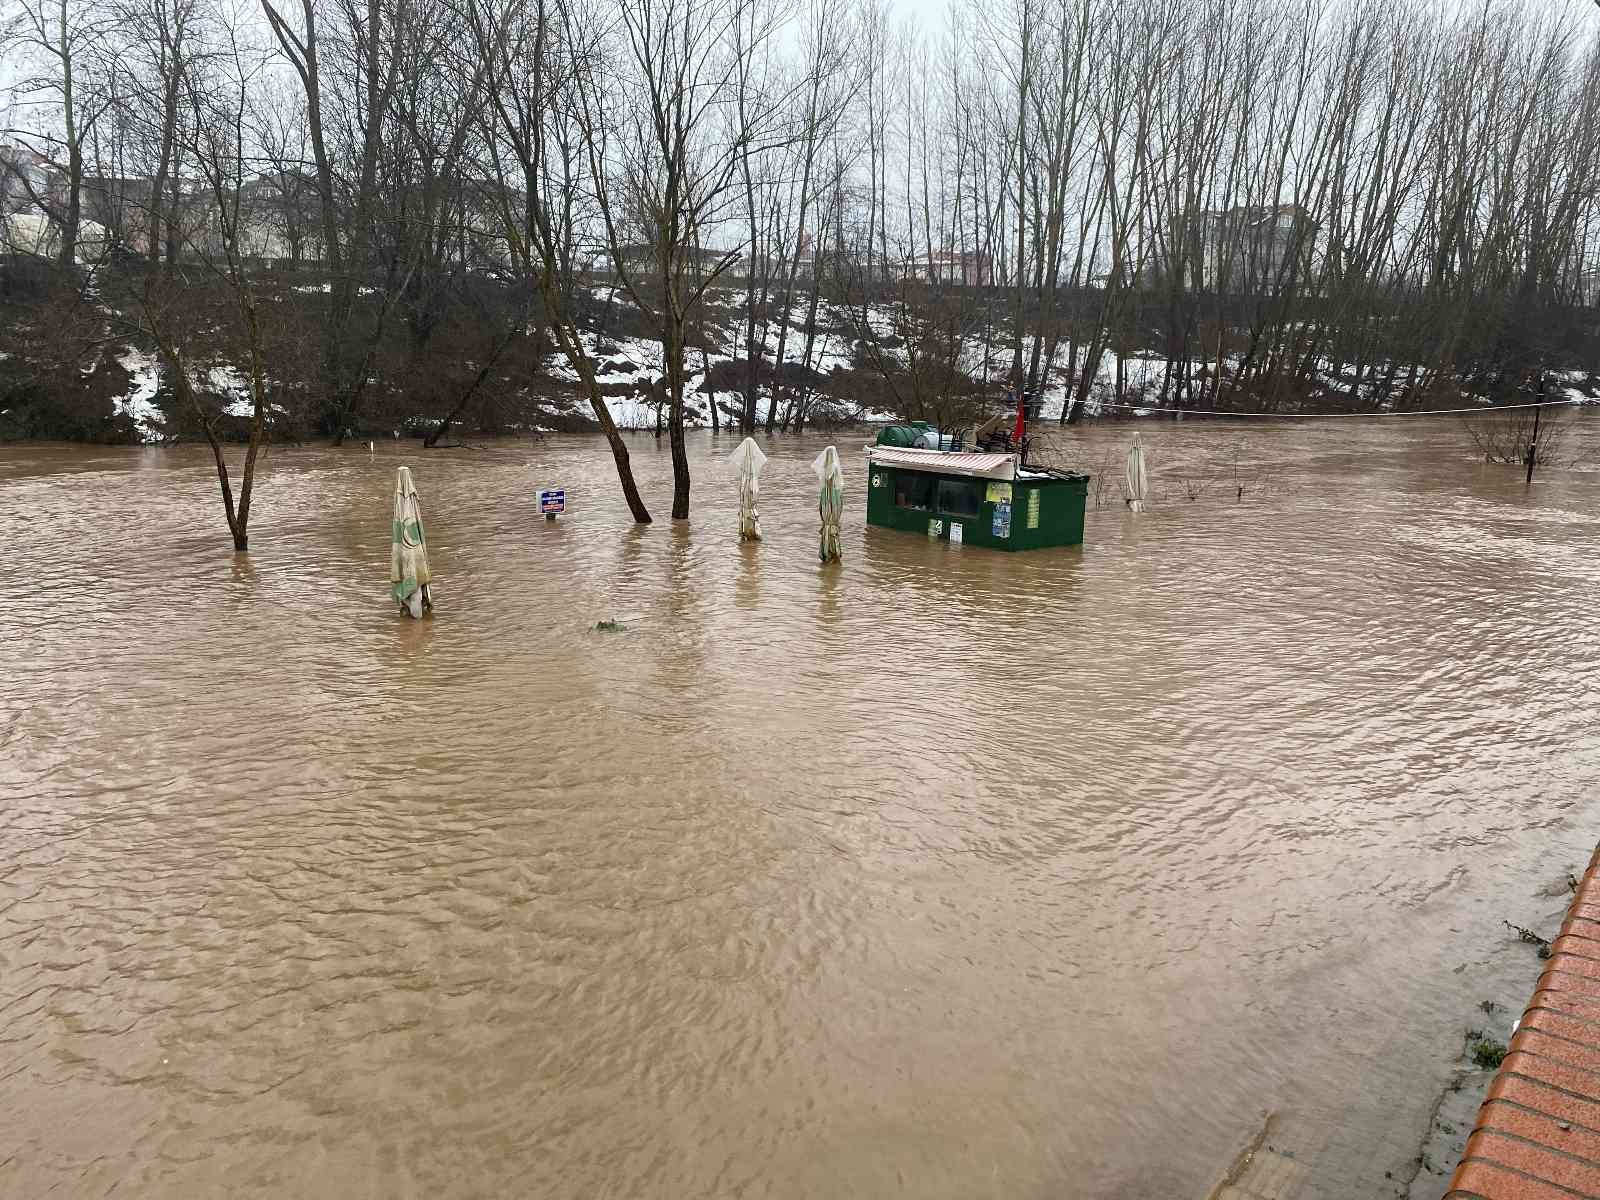 Eriyen kar suları Bartın Irmağında taşkınlara neden oldu #bartin